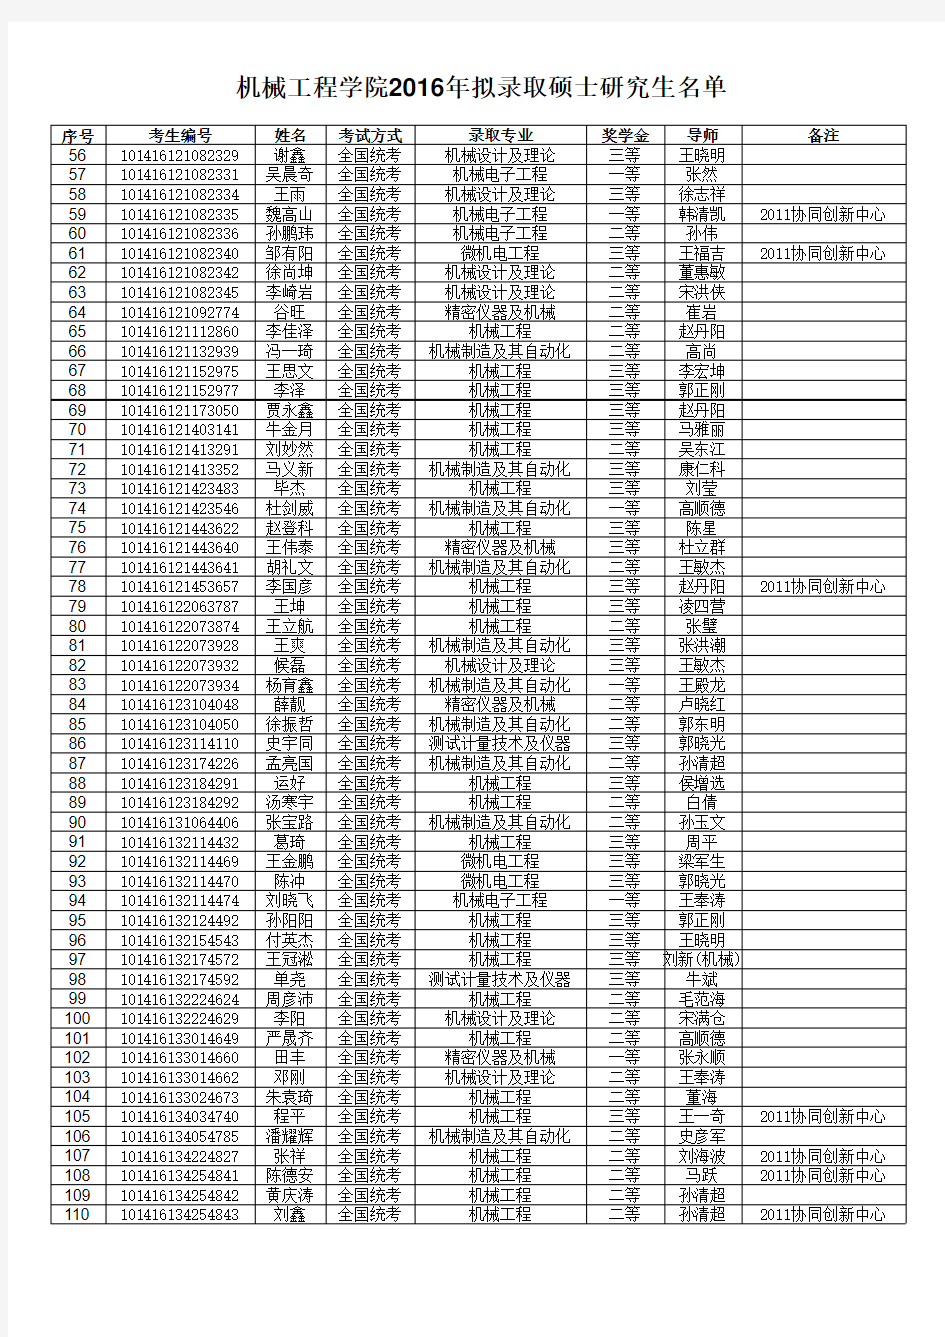 2016年硕士研究生拟录取名单(公示).xls; filename=utf-8''2016年硕士研究生拟录取名单(公示)